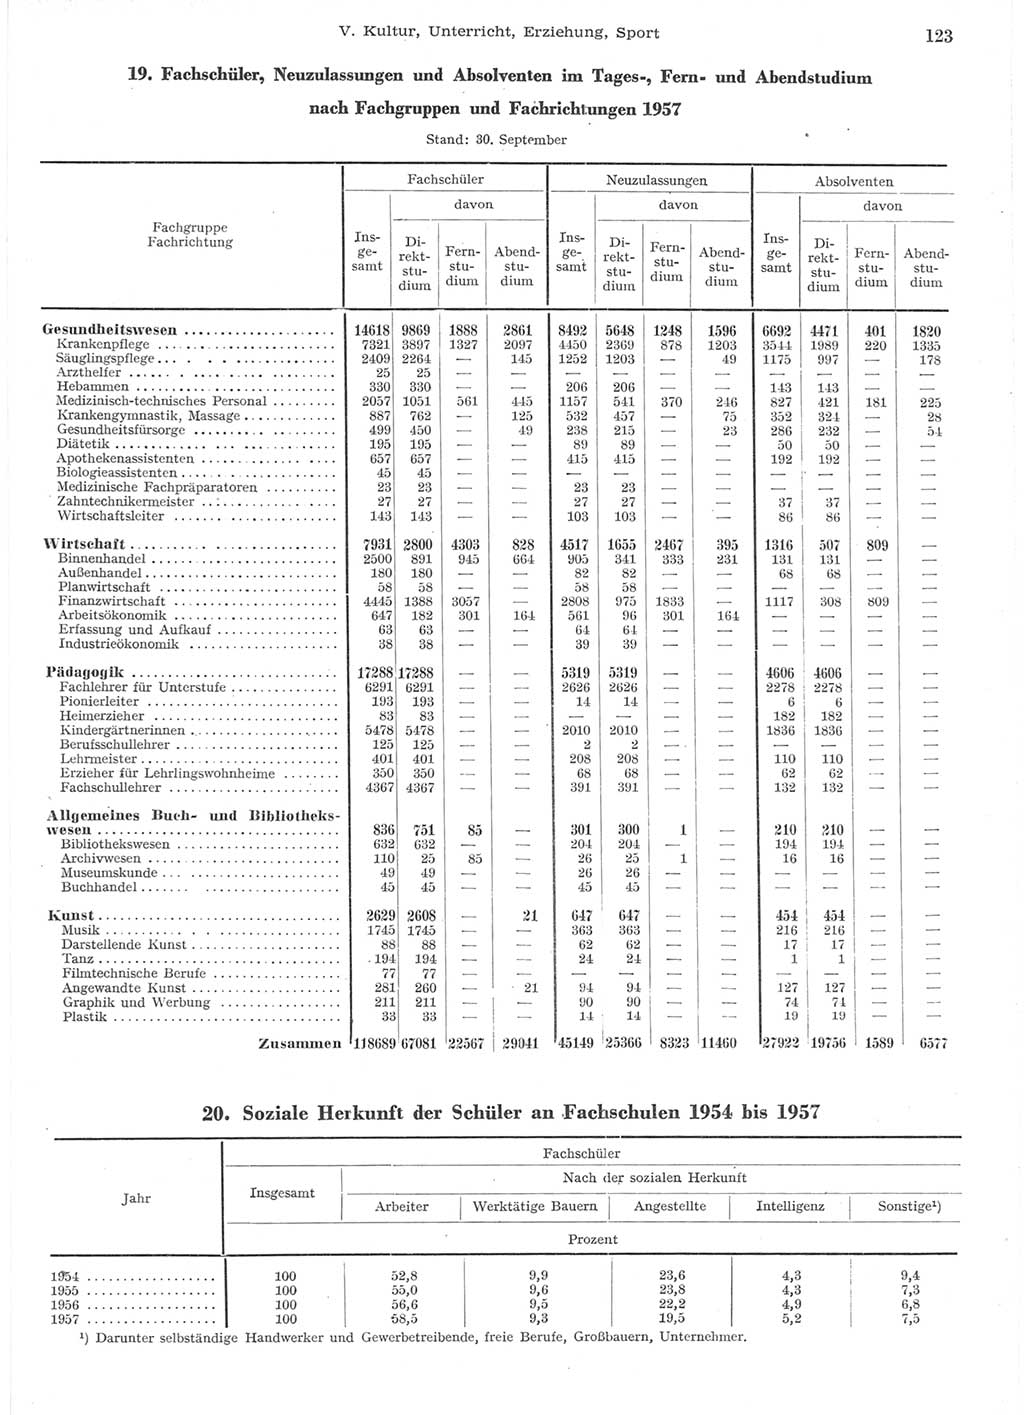 Statistisches Jahrbuch der Deutschen Demokratischen Republik (DDR) 1957, Seite 123 (Stat. Jb. DDR 1957, S. 123)